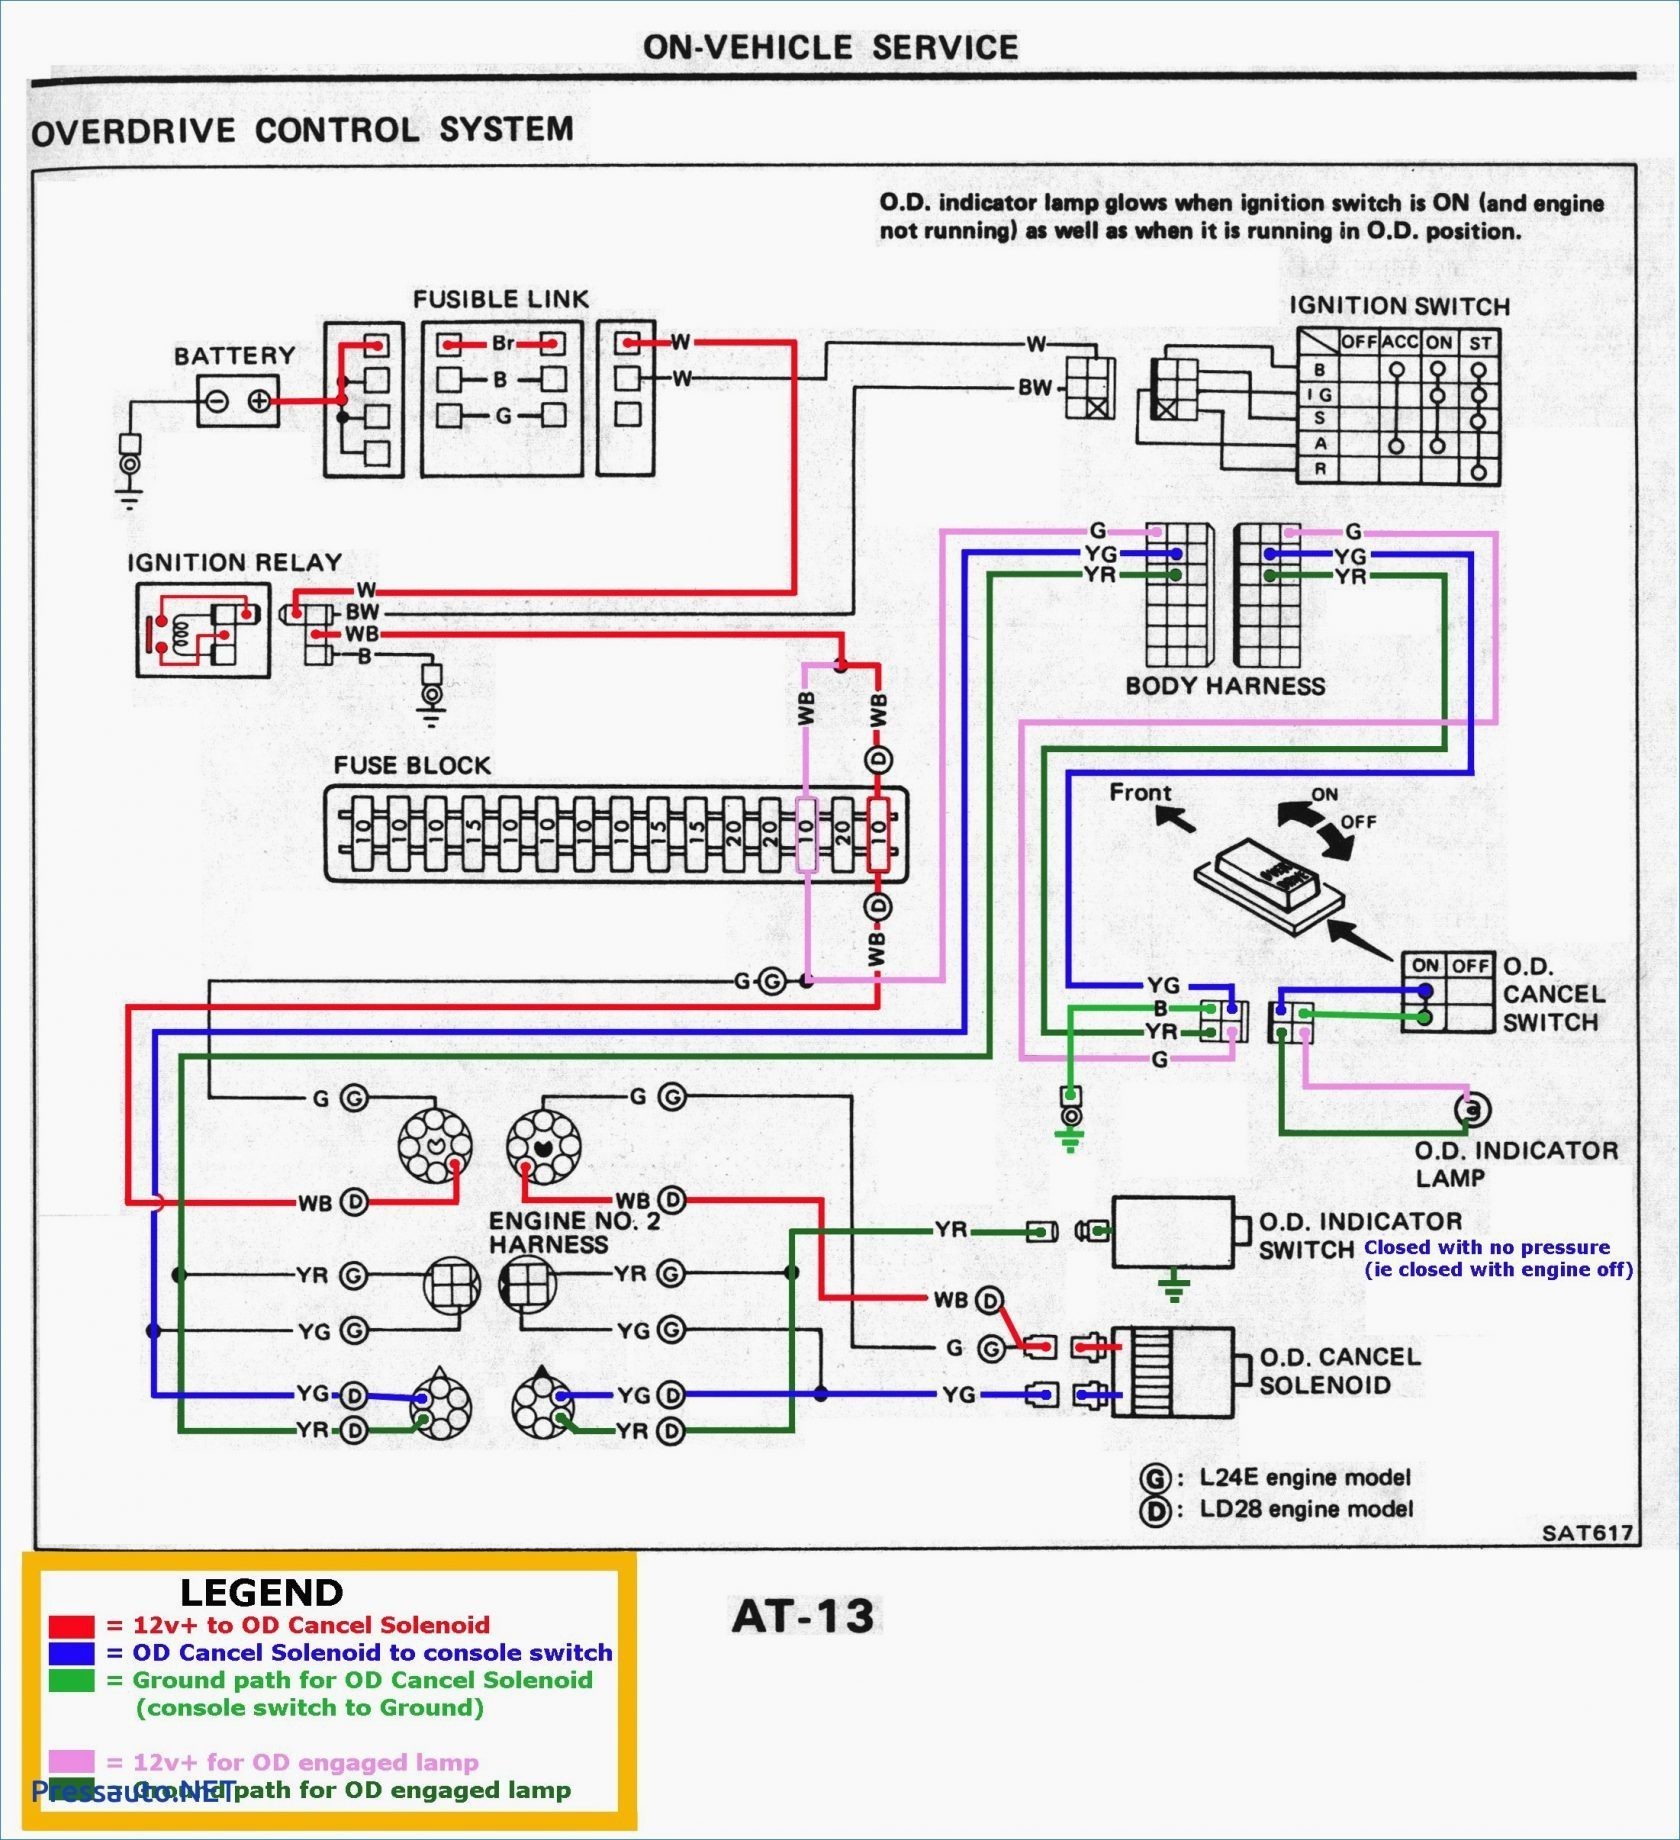 Electric Motor Parts Diagram General Motors Wiring Diagrams Wiring Diagram toolbox Of Electric Motor Parts Diagram